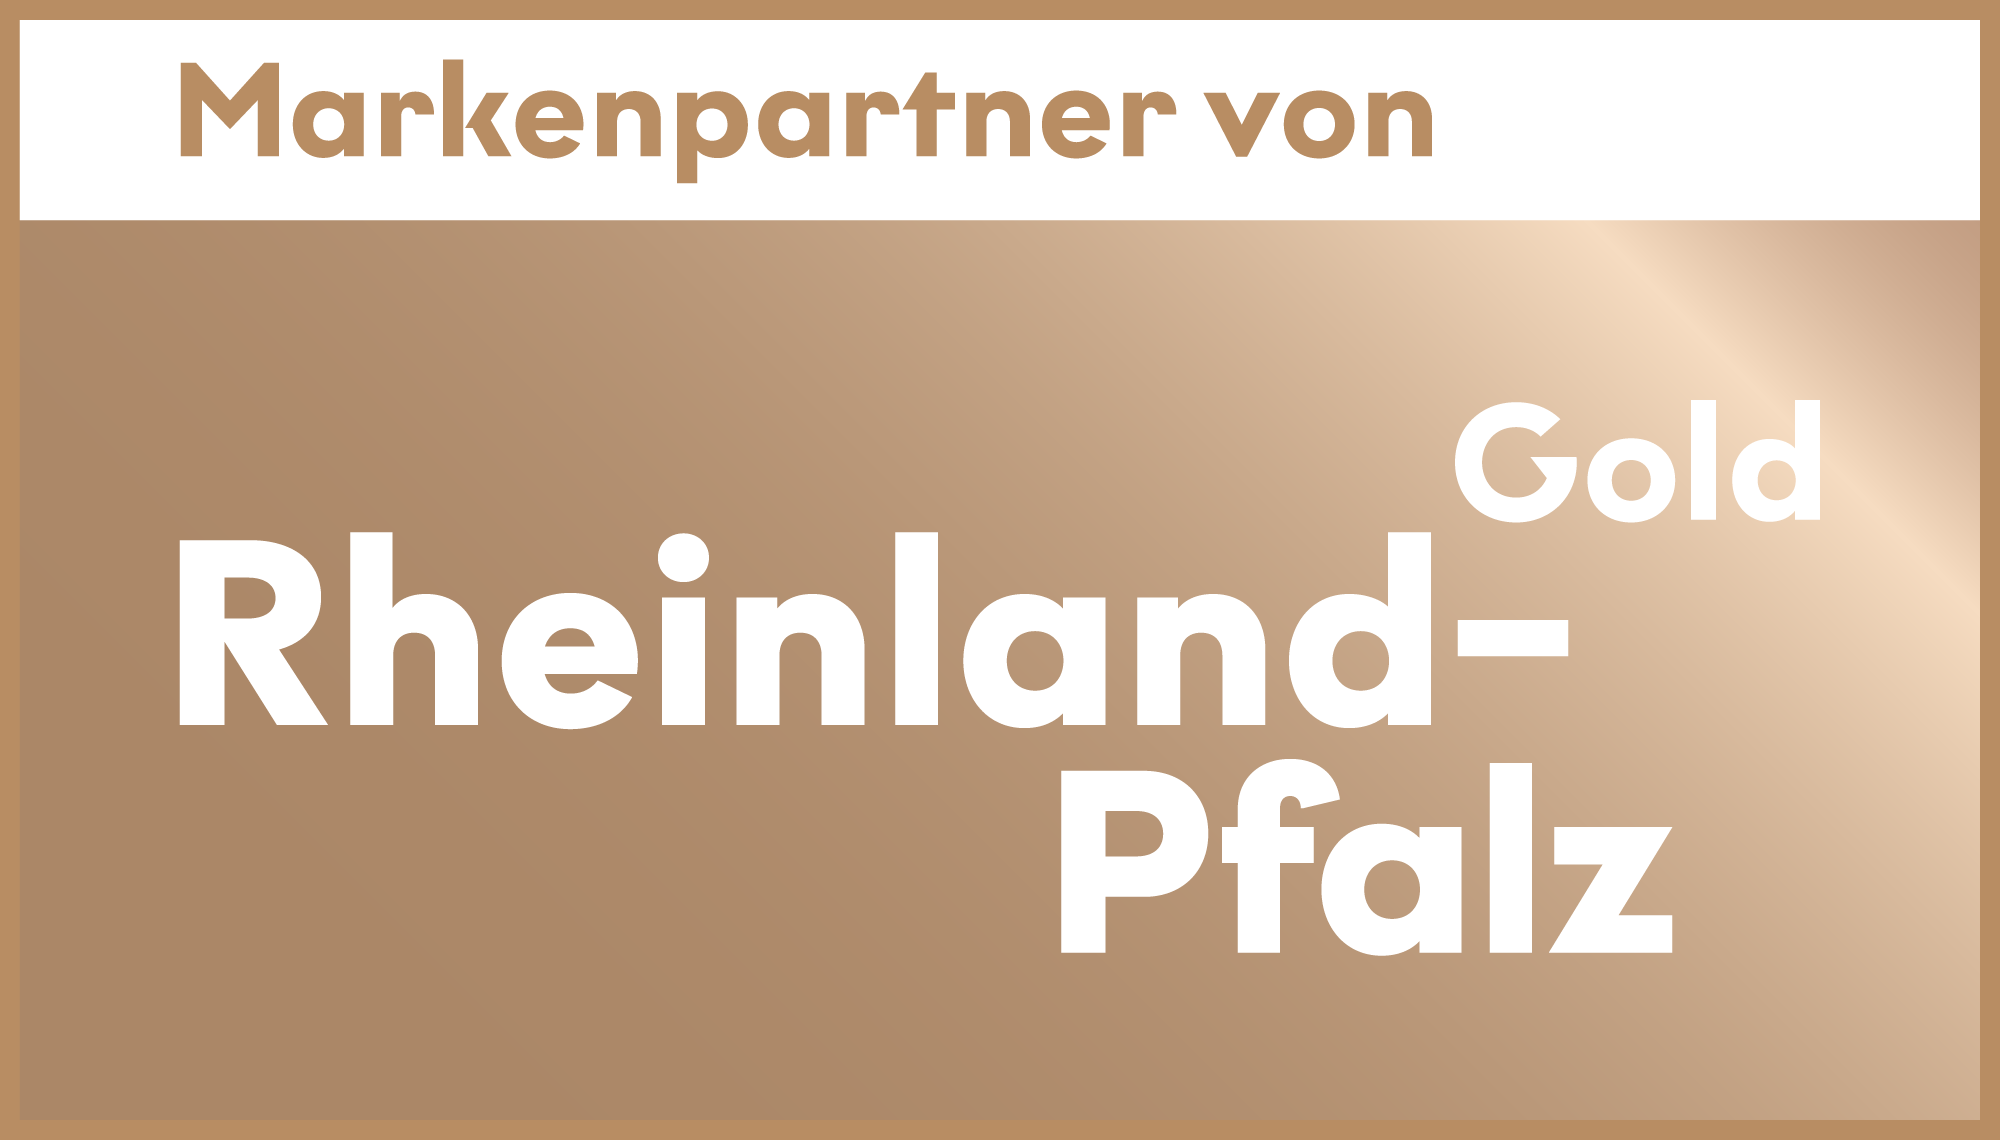 Markenpartner von Rheinland-Pfalz Gold